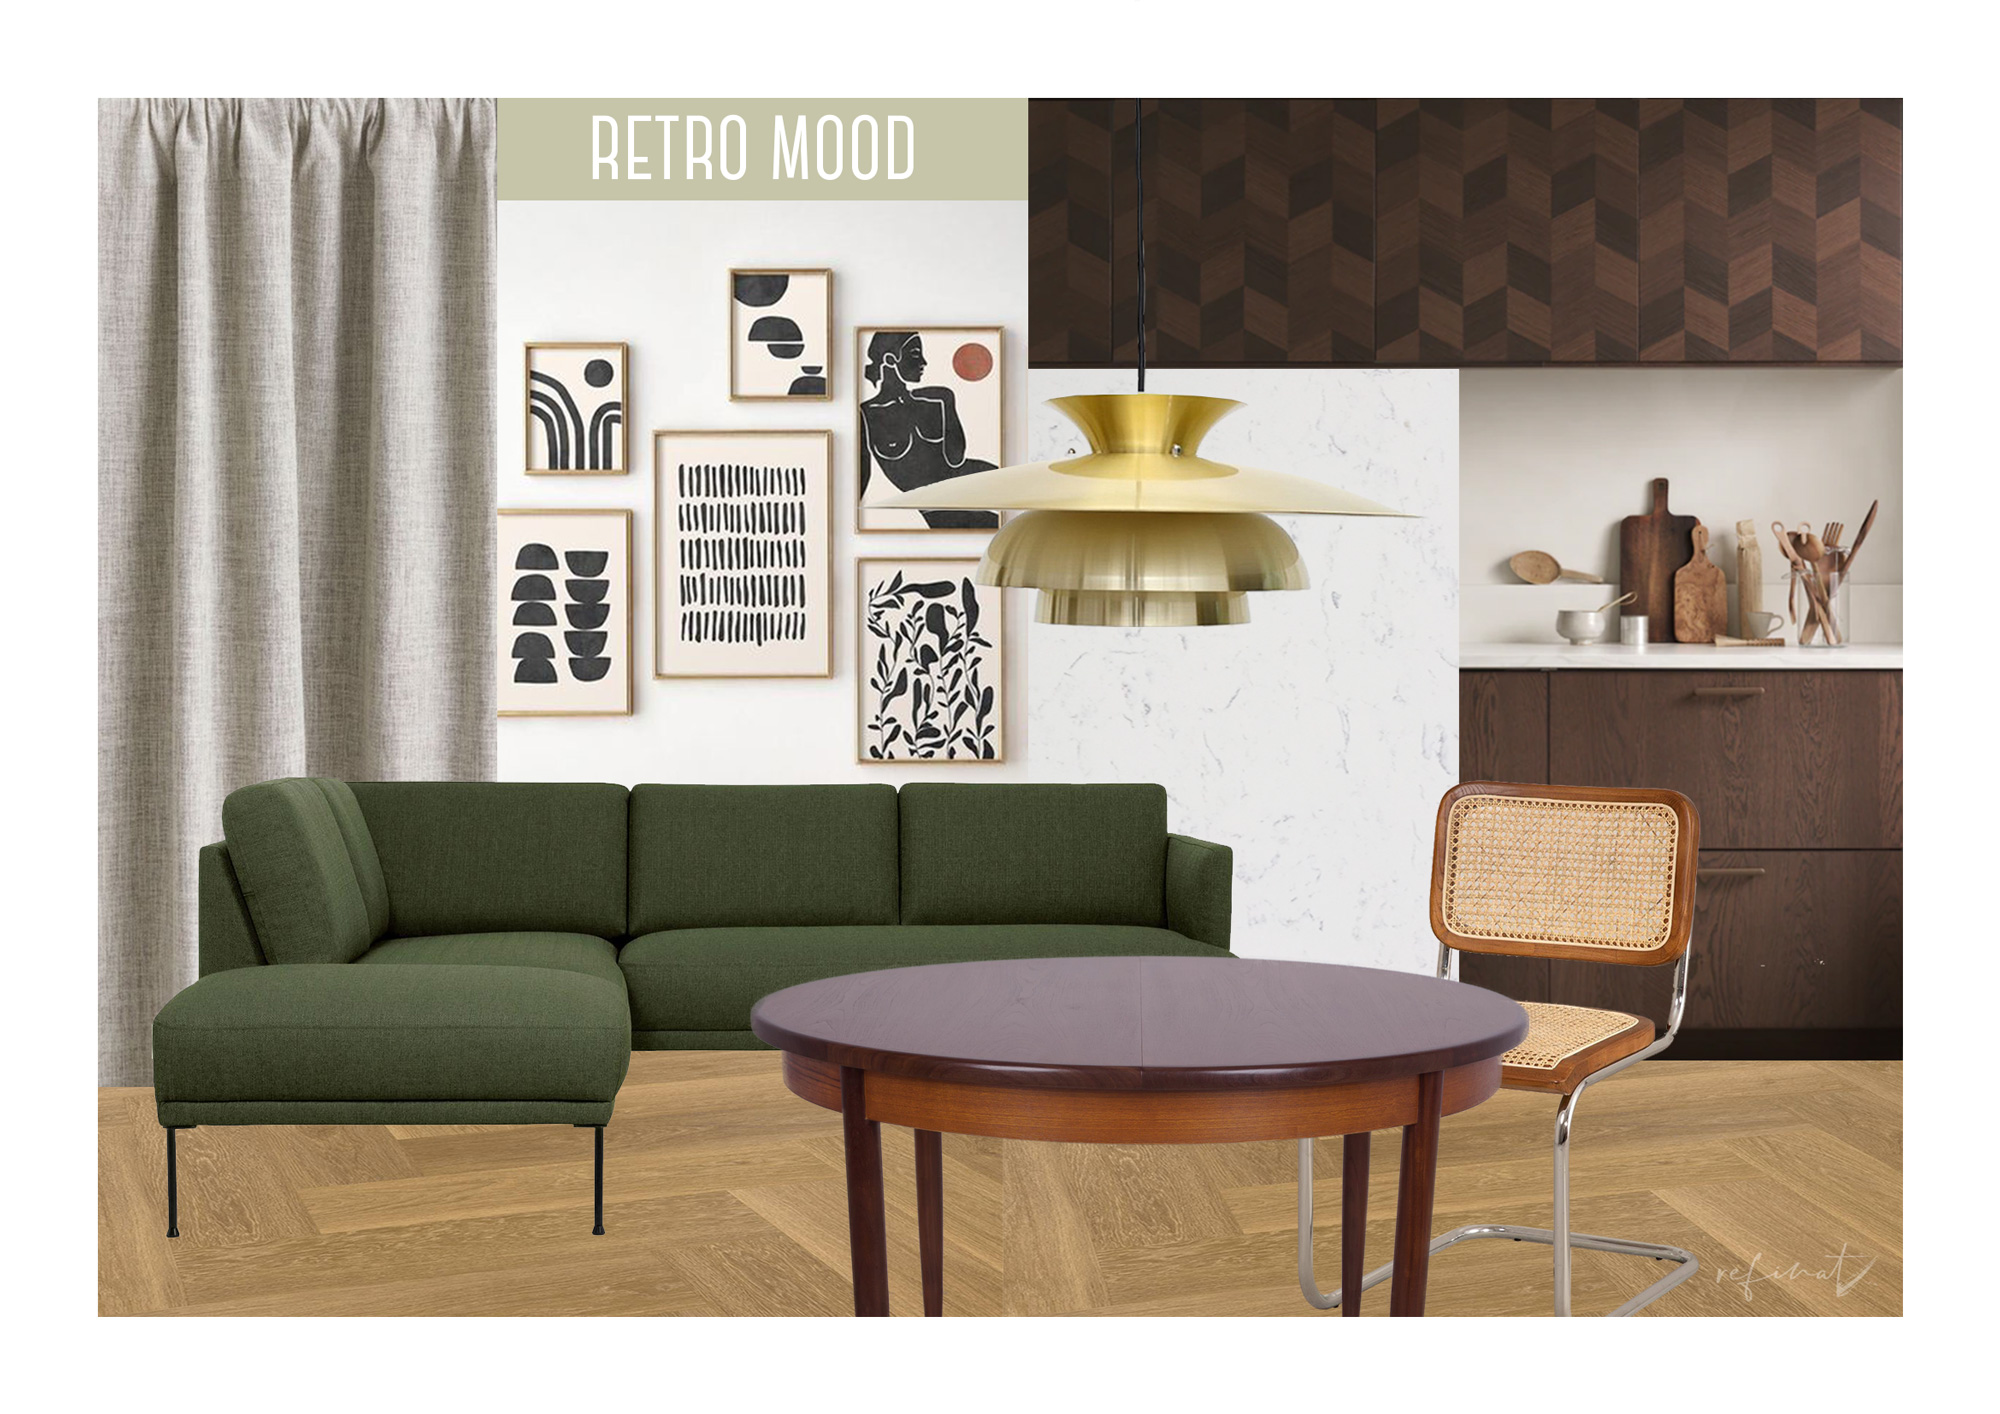 Moodboard salonu w stylu retro, nawiązującego do modernizmu